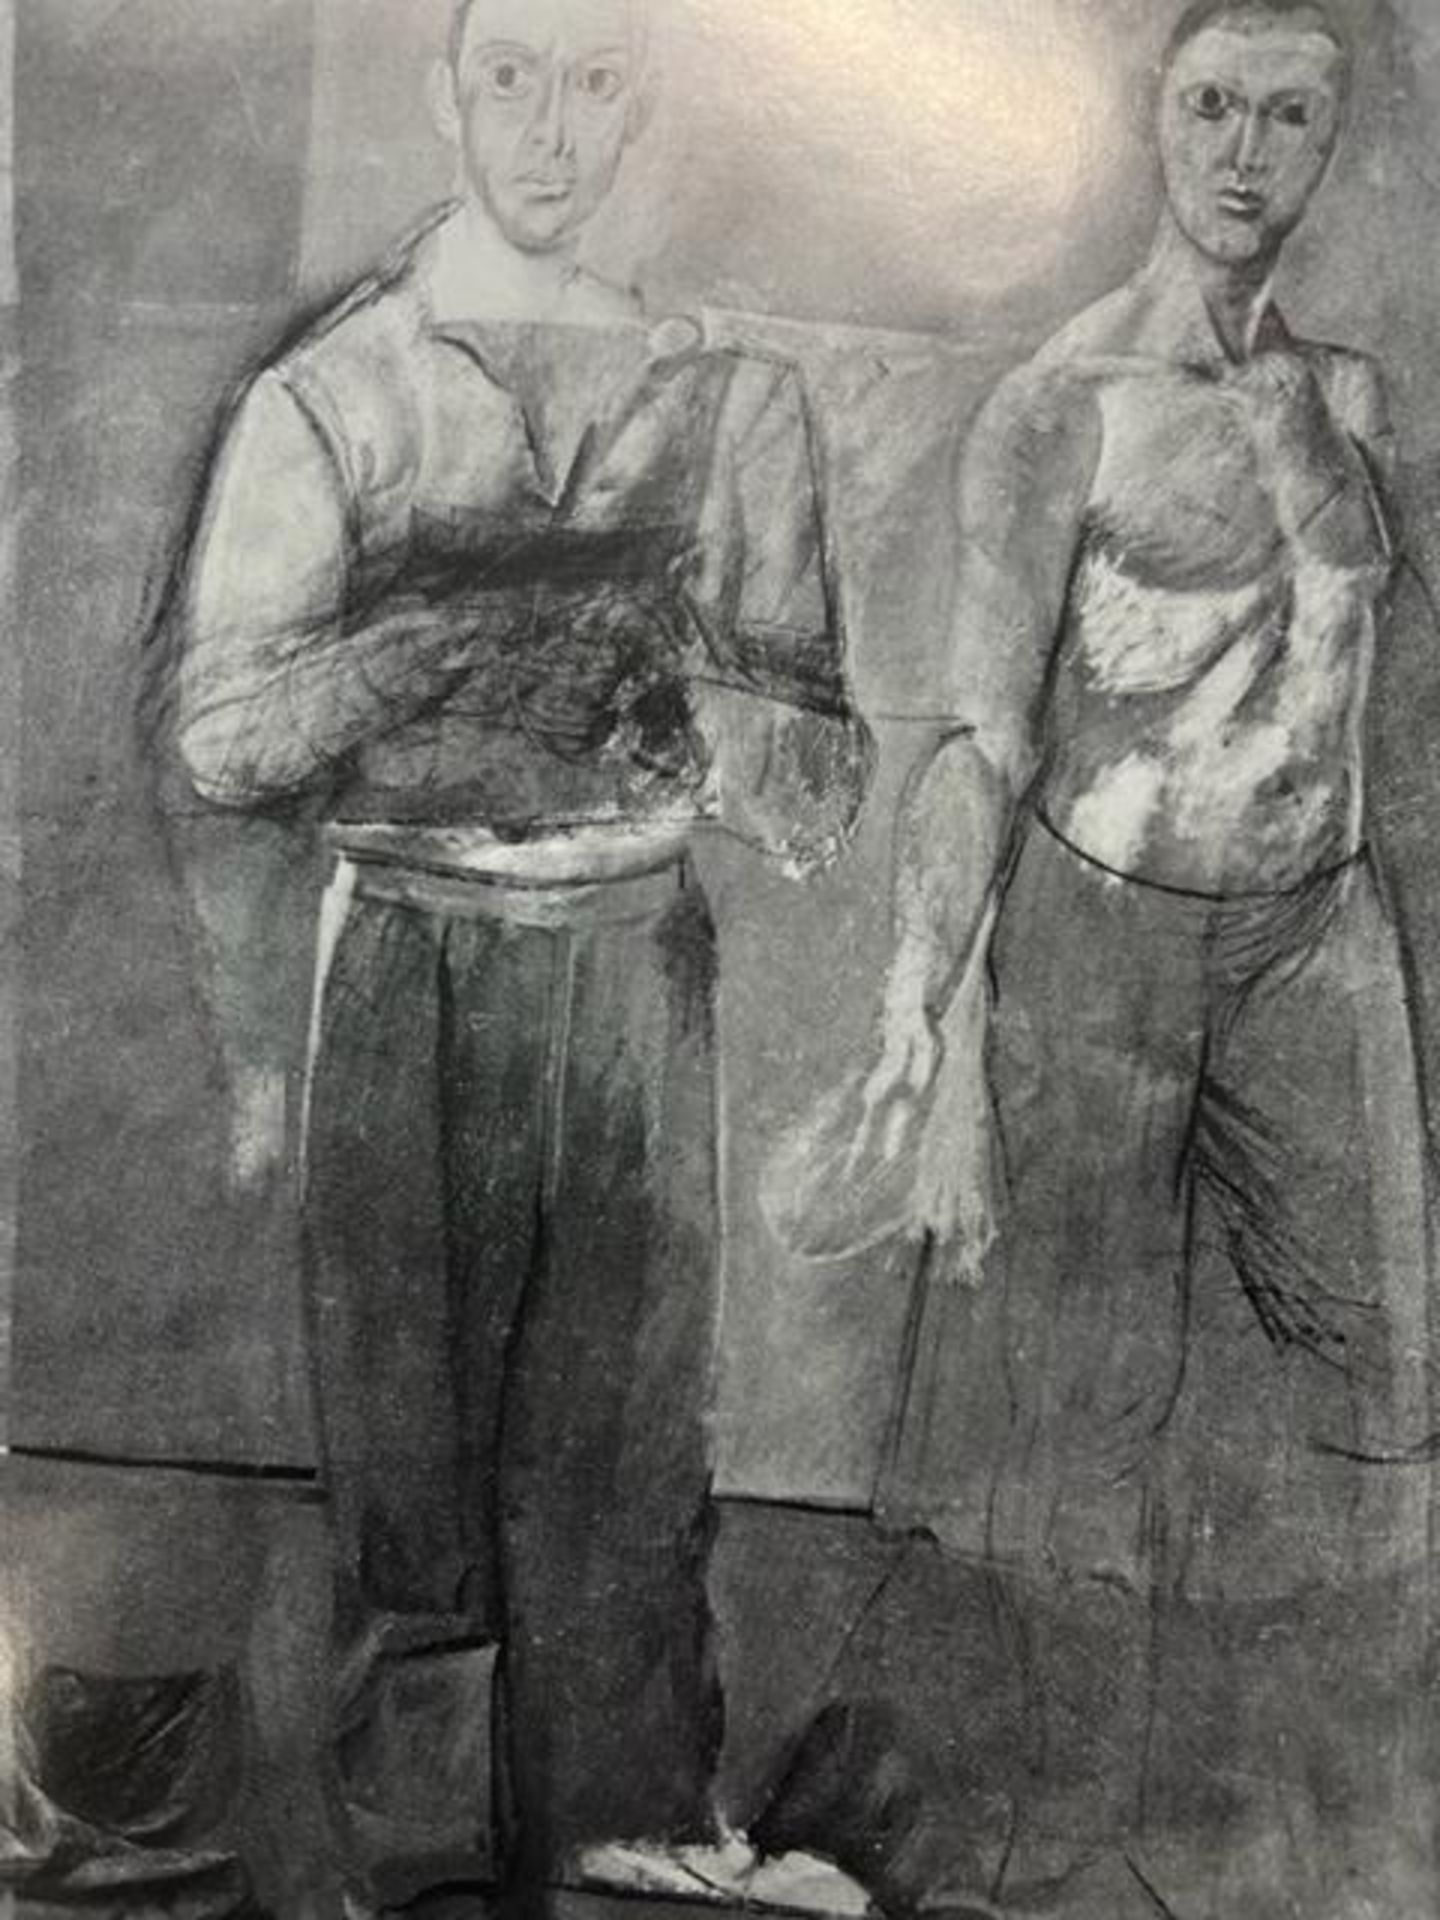 Willem de Kooning "Two Men Standing" Print. - Image 4 of 6